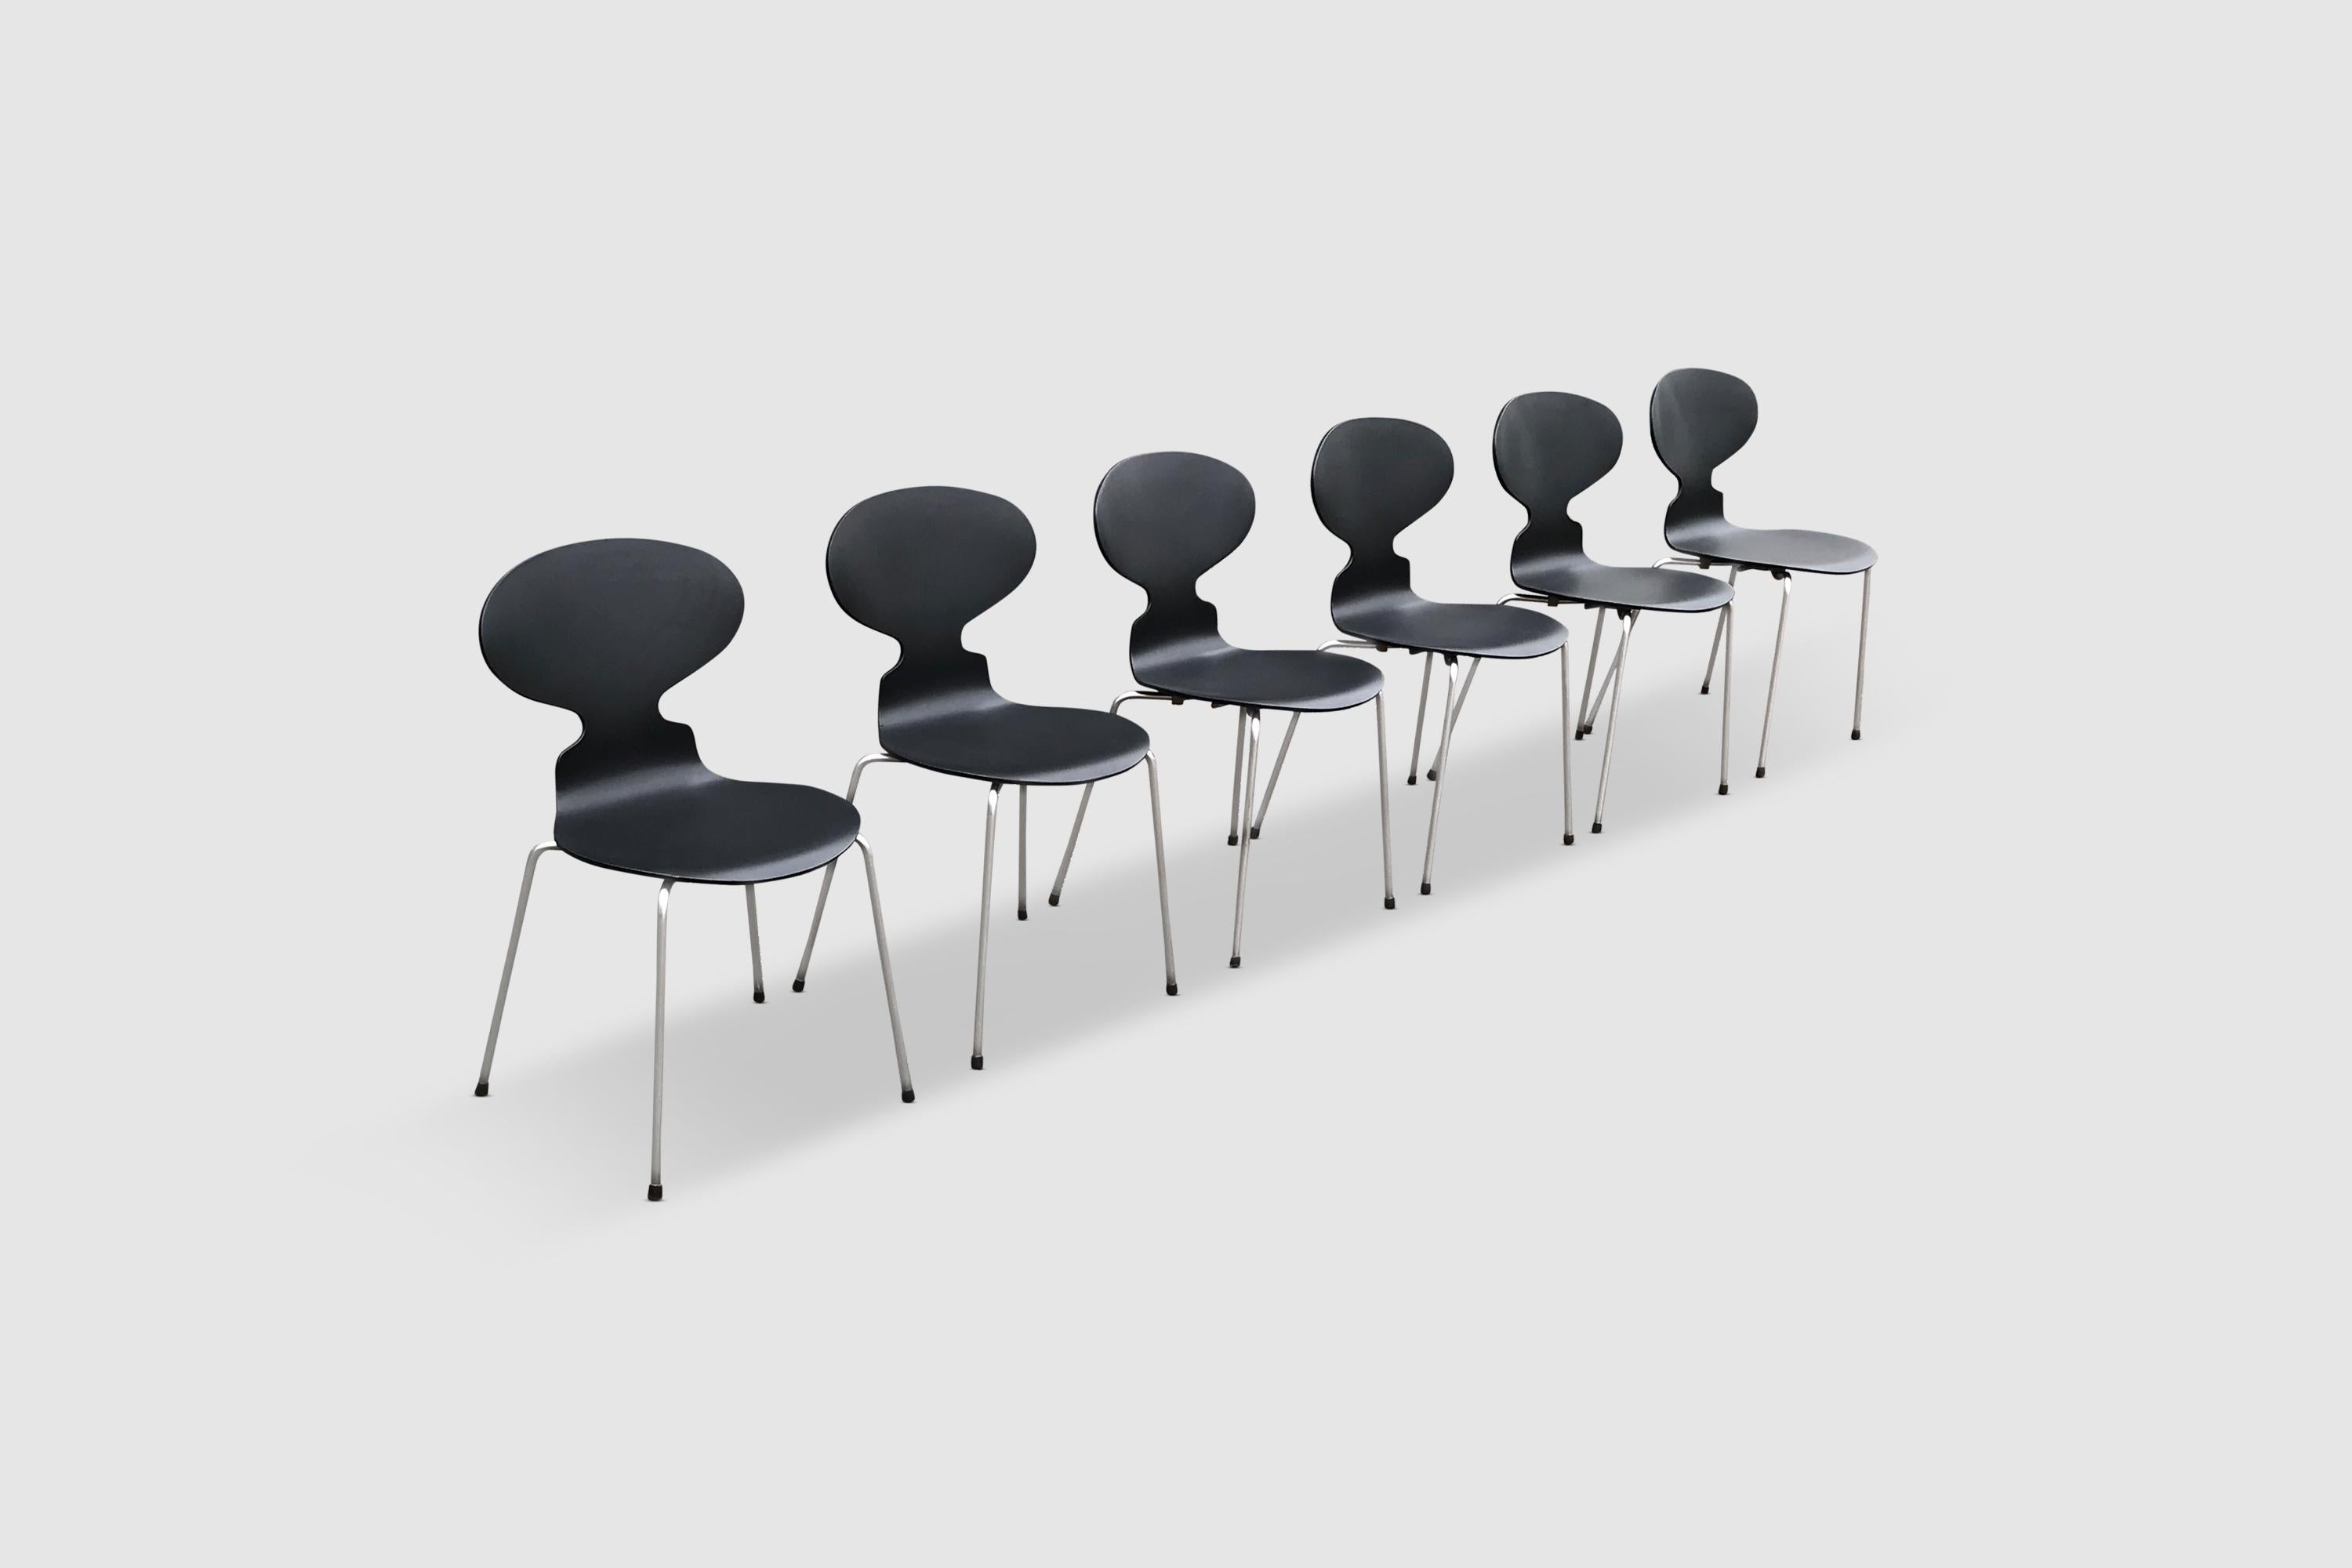 Un ensemble de chaises 3100 Ant, célèbres et renommées, d'Arne Jacobsen pour Fritz Hansen. Il s'agit d'un ensemble de la deuxième génération des années 60, avec les premières plaques de fer sous le siège.

L'ensemble est constitué de contreplaqué